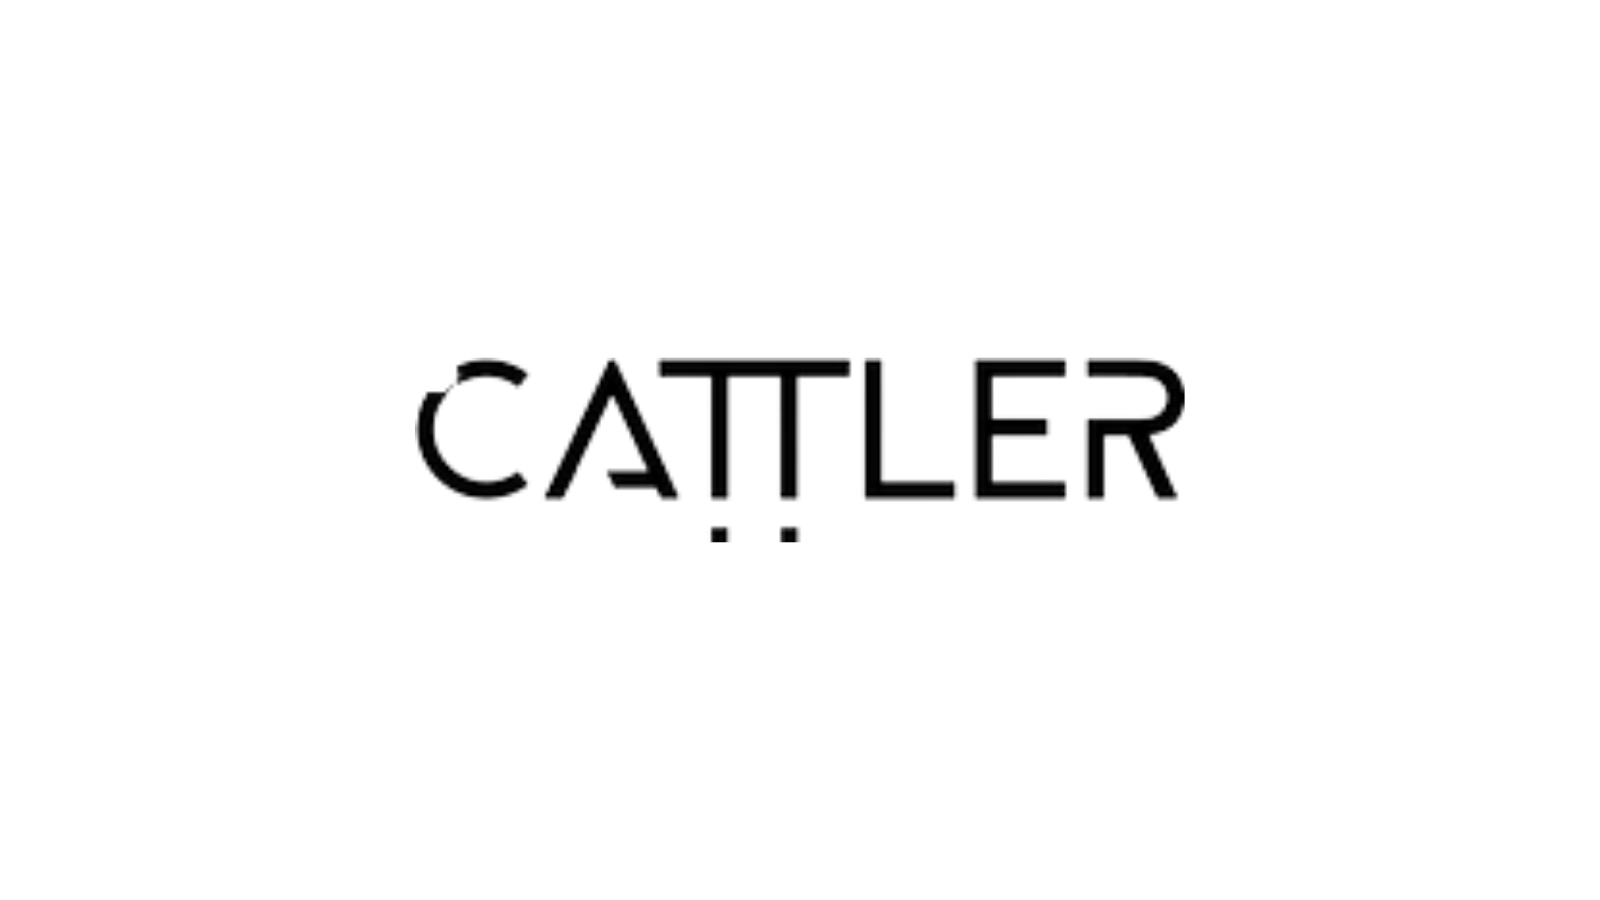 Cattler